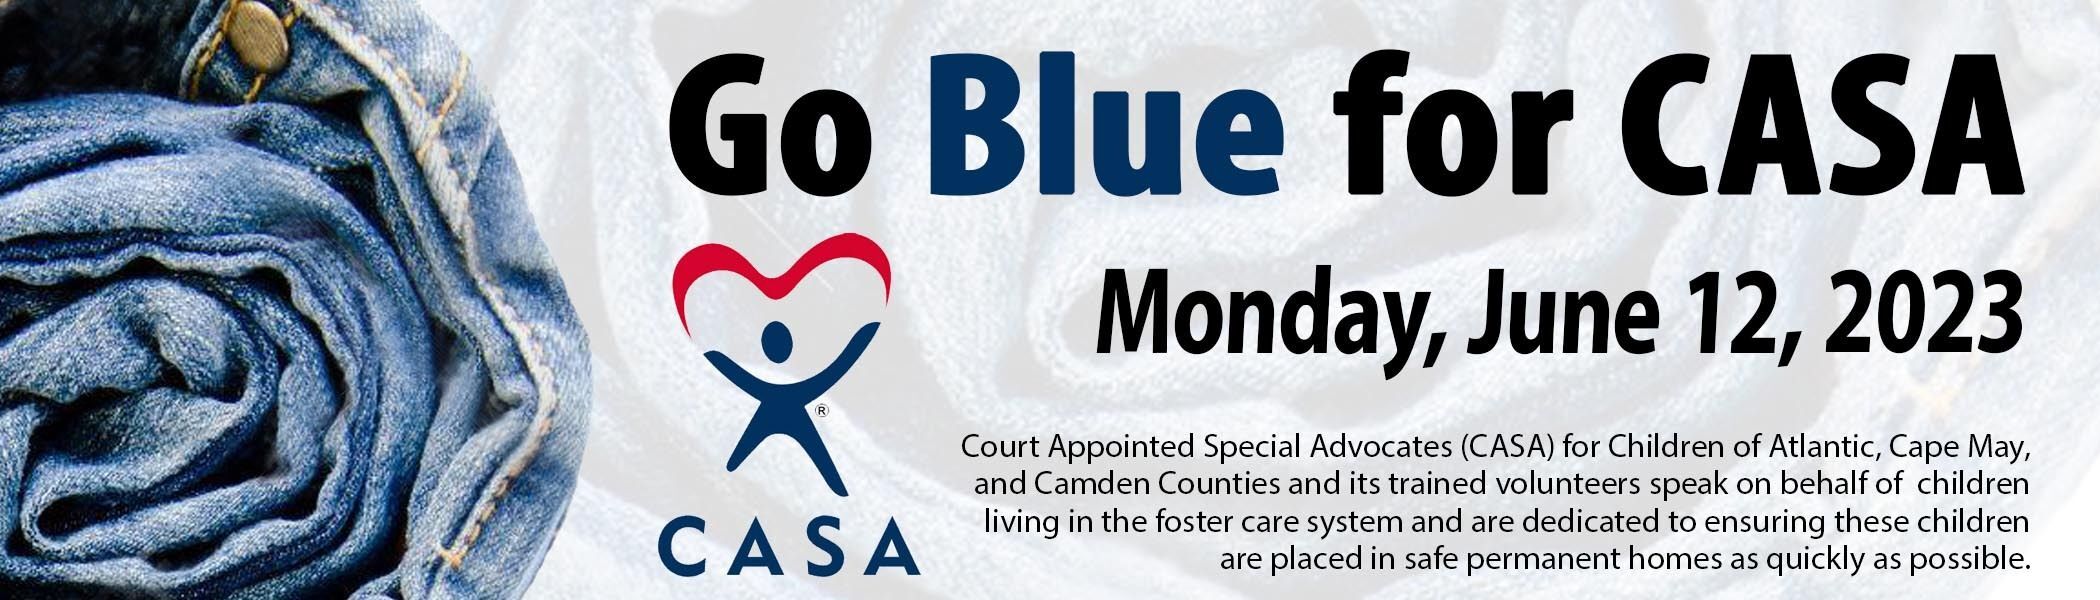 Go Blue for CASA event logo - CASA for Children